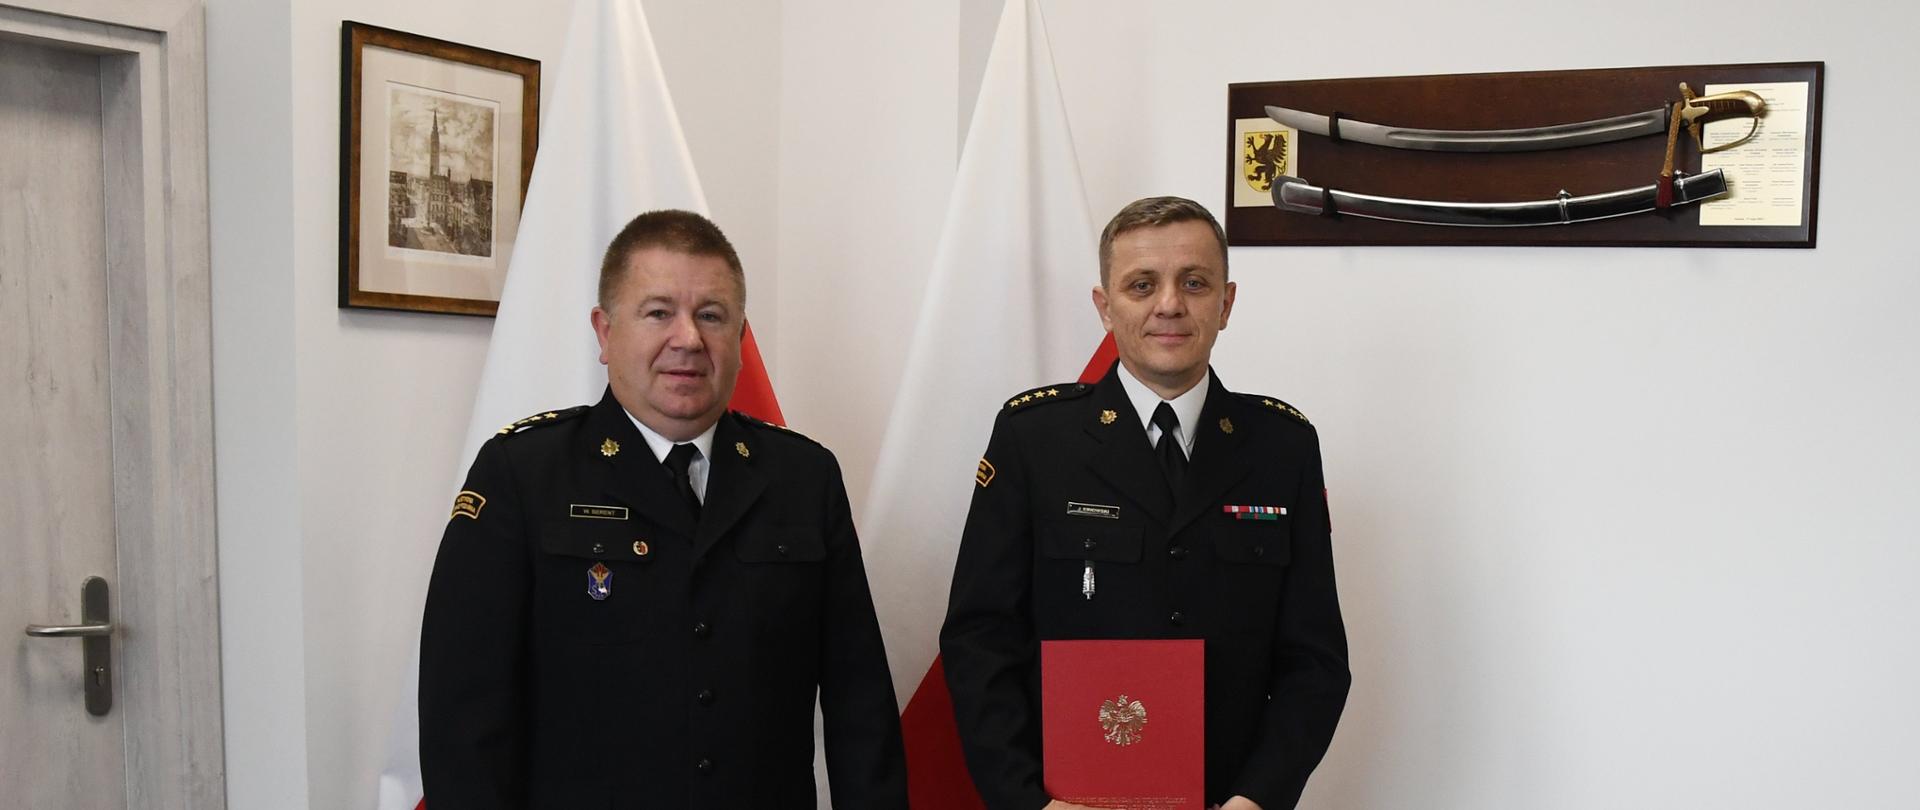 Dwóch funkcjonariuszy Państwowej Straży Pożarnej stoją obok siebie, jeden z nich trzyma czerwoną teczkę za nimi stoją dwie flagi Polski na ścianach wiszą obraz oraz szabla.